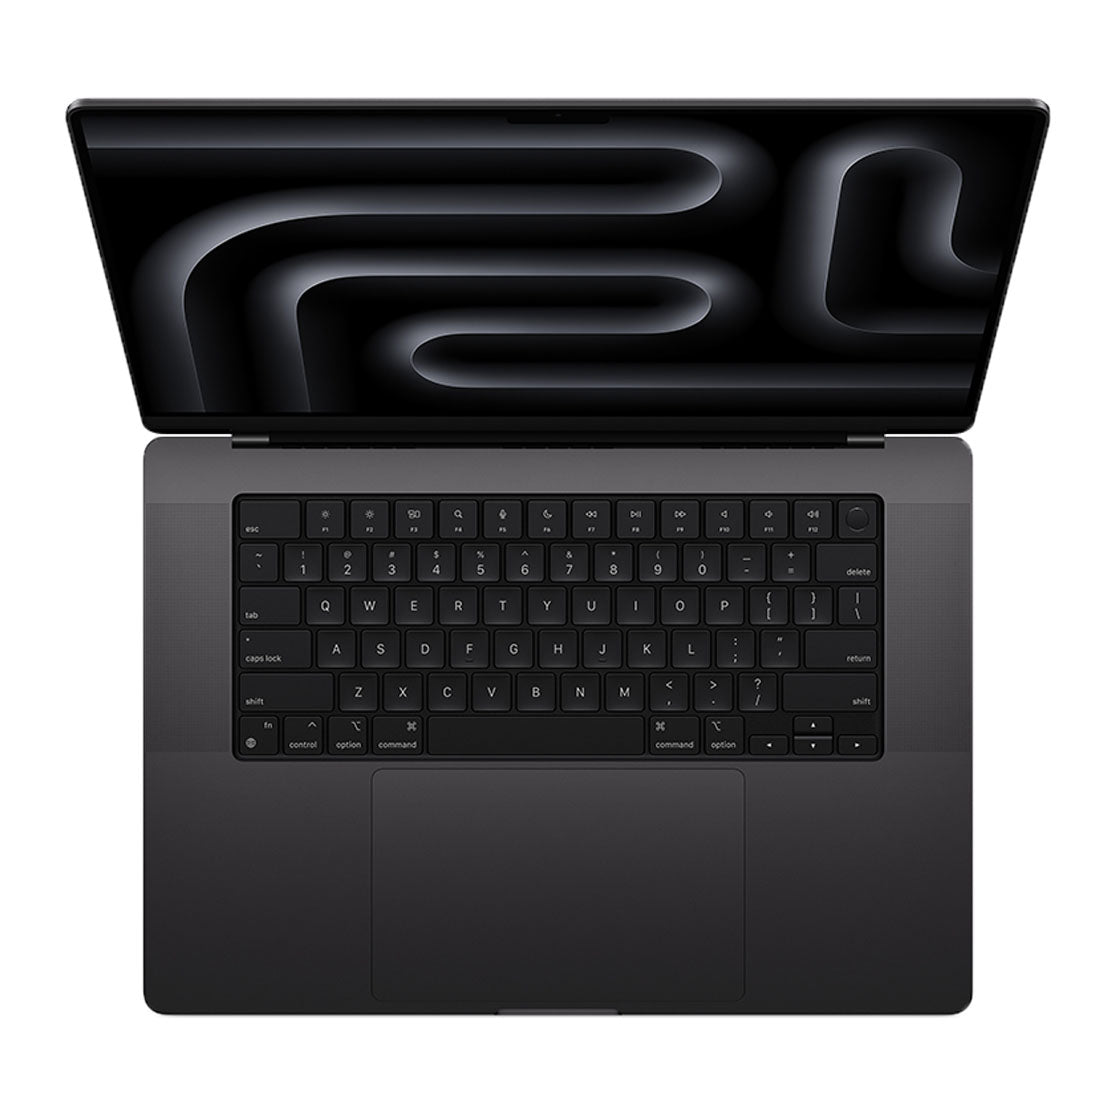 Space black keys, M3 MacBook Pro: Elegance meets functionality